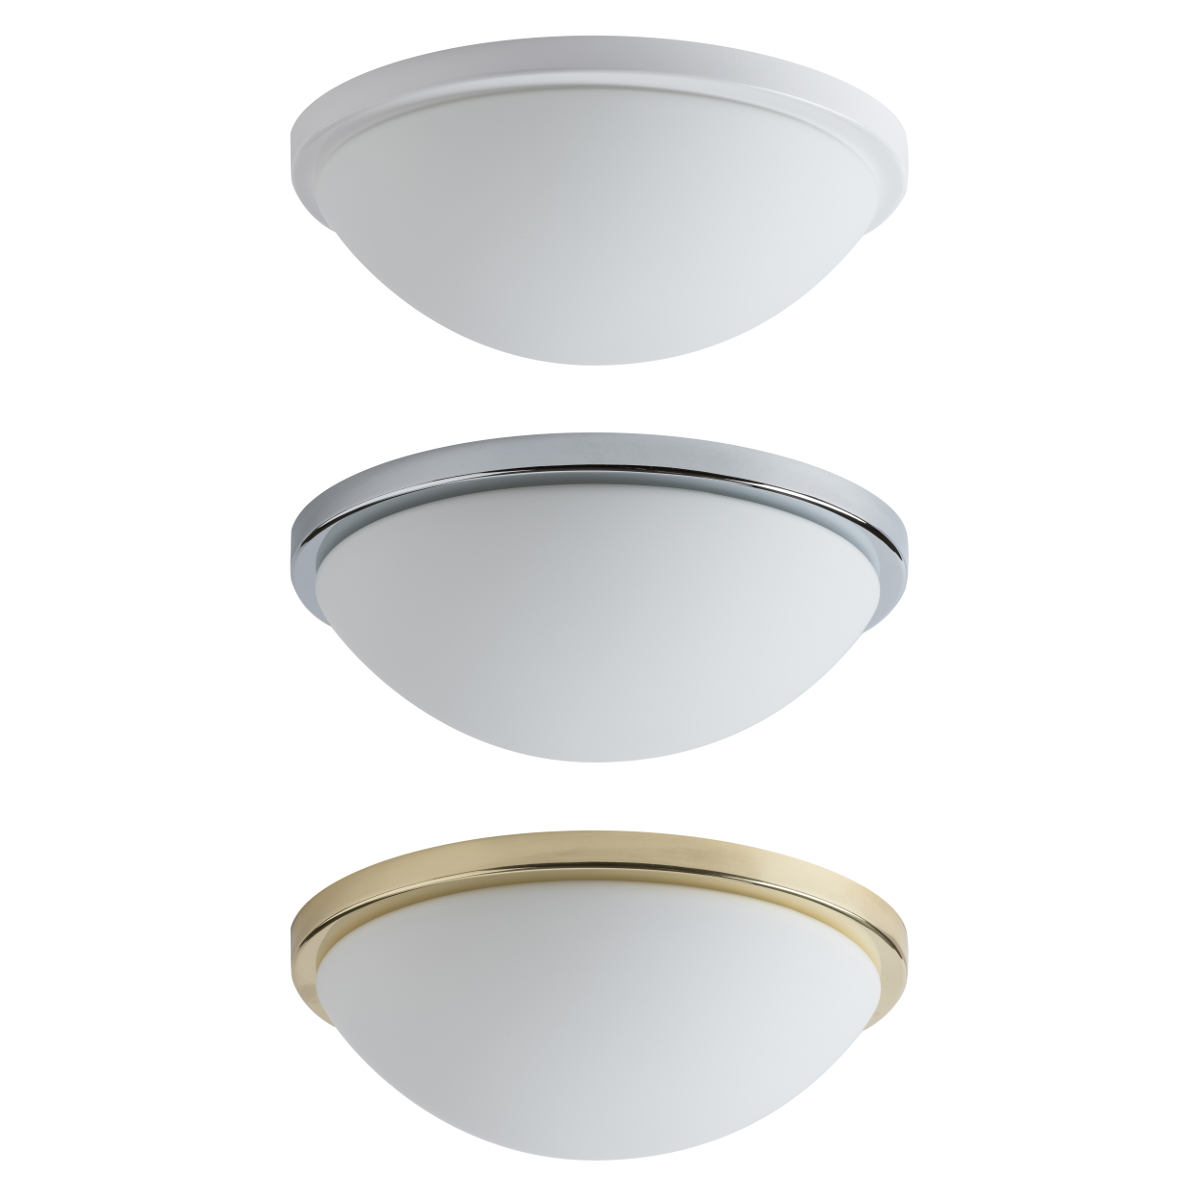 Funktionale Opalglas-Deckenleuchte AURORA LED, Ø 20–60 cm: Auf Anfrage erhältlich: Zierring in goldener, silberner oder weißer Ausführung (hier Ø 30 cm)